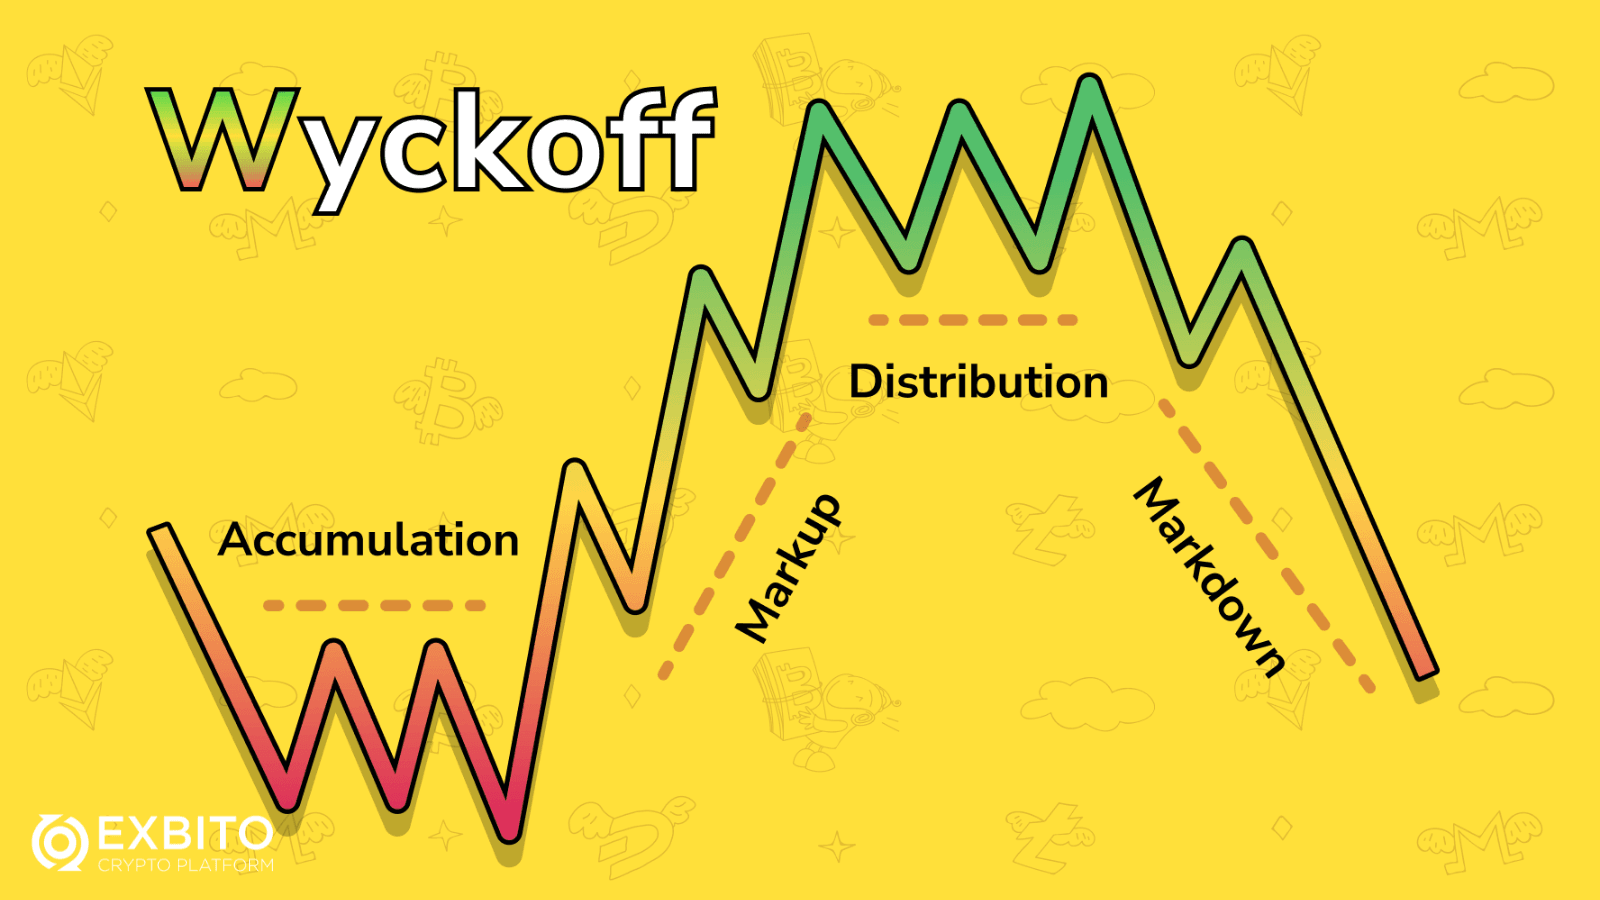 چهار فاز چرخه بازار وایکوف (Wyckoff) چگونه است؟